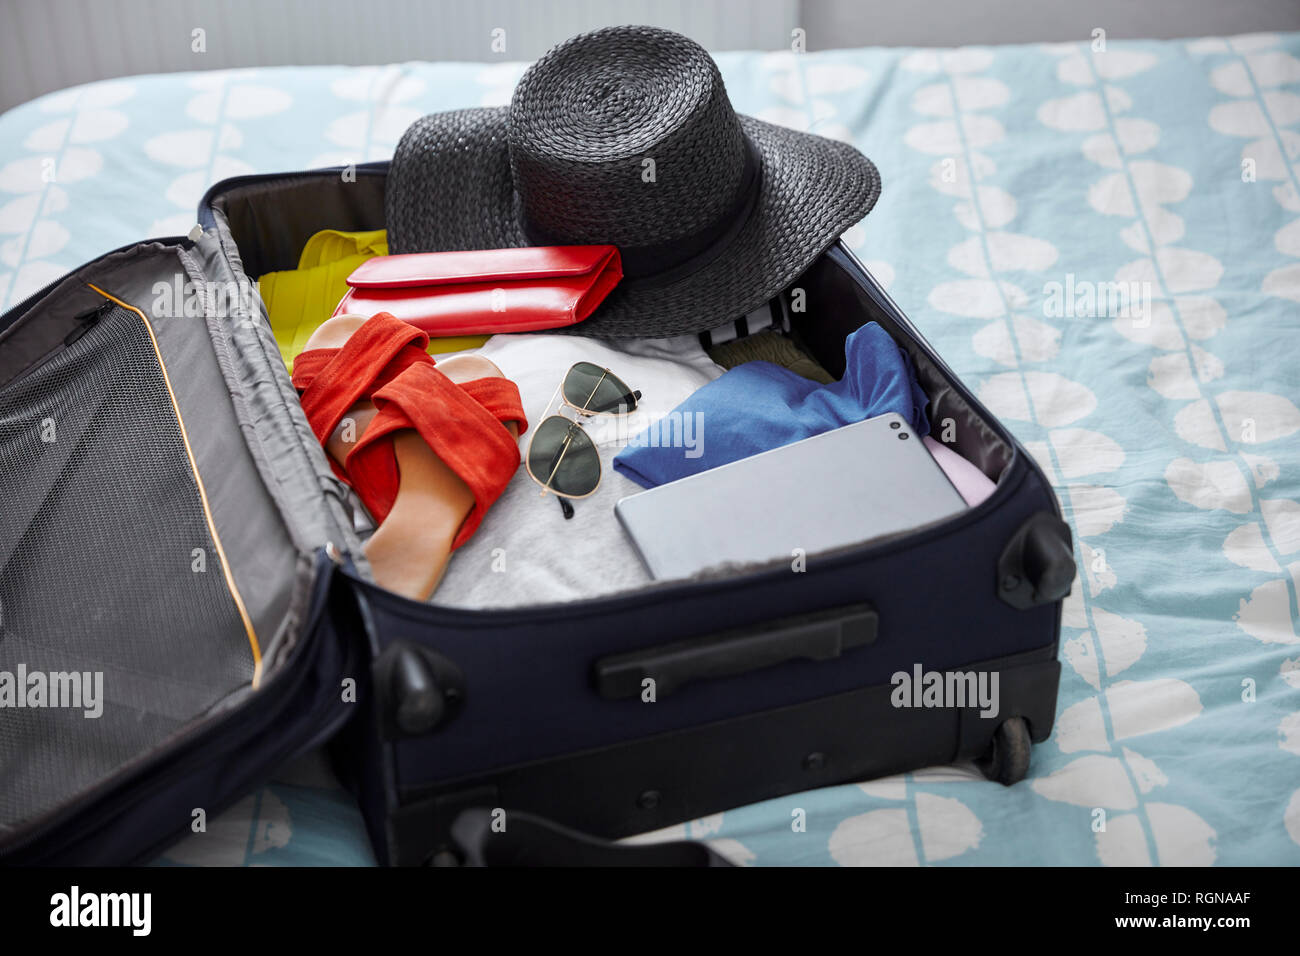 Vacances d'été dans une valise à outils on bed Banque D'Images